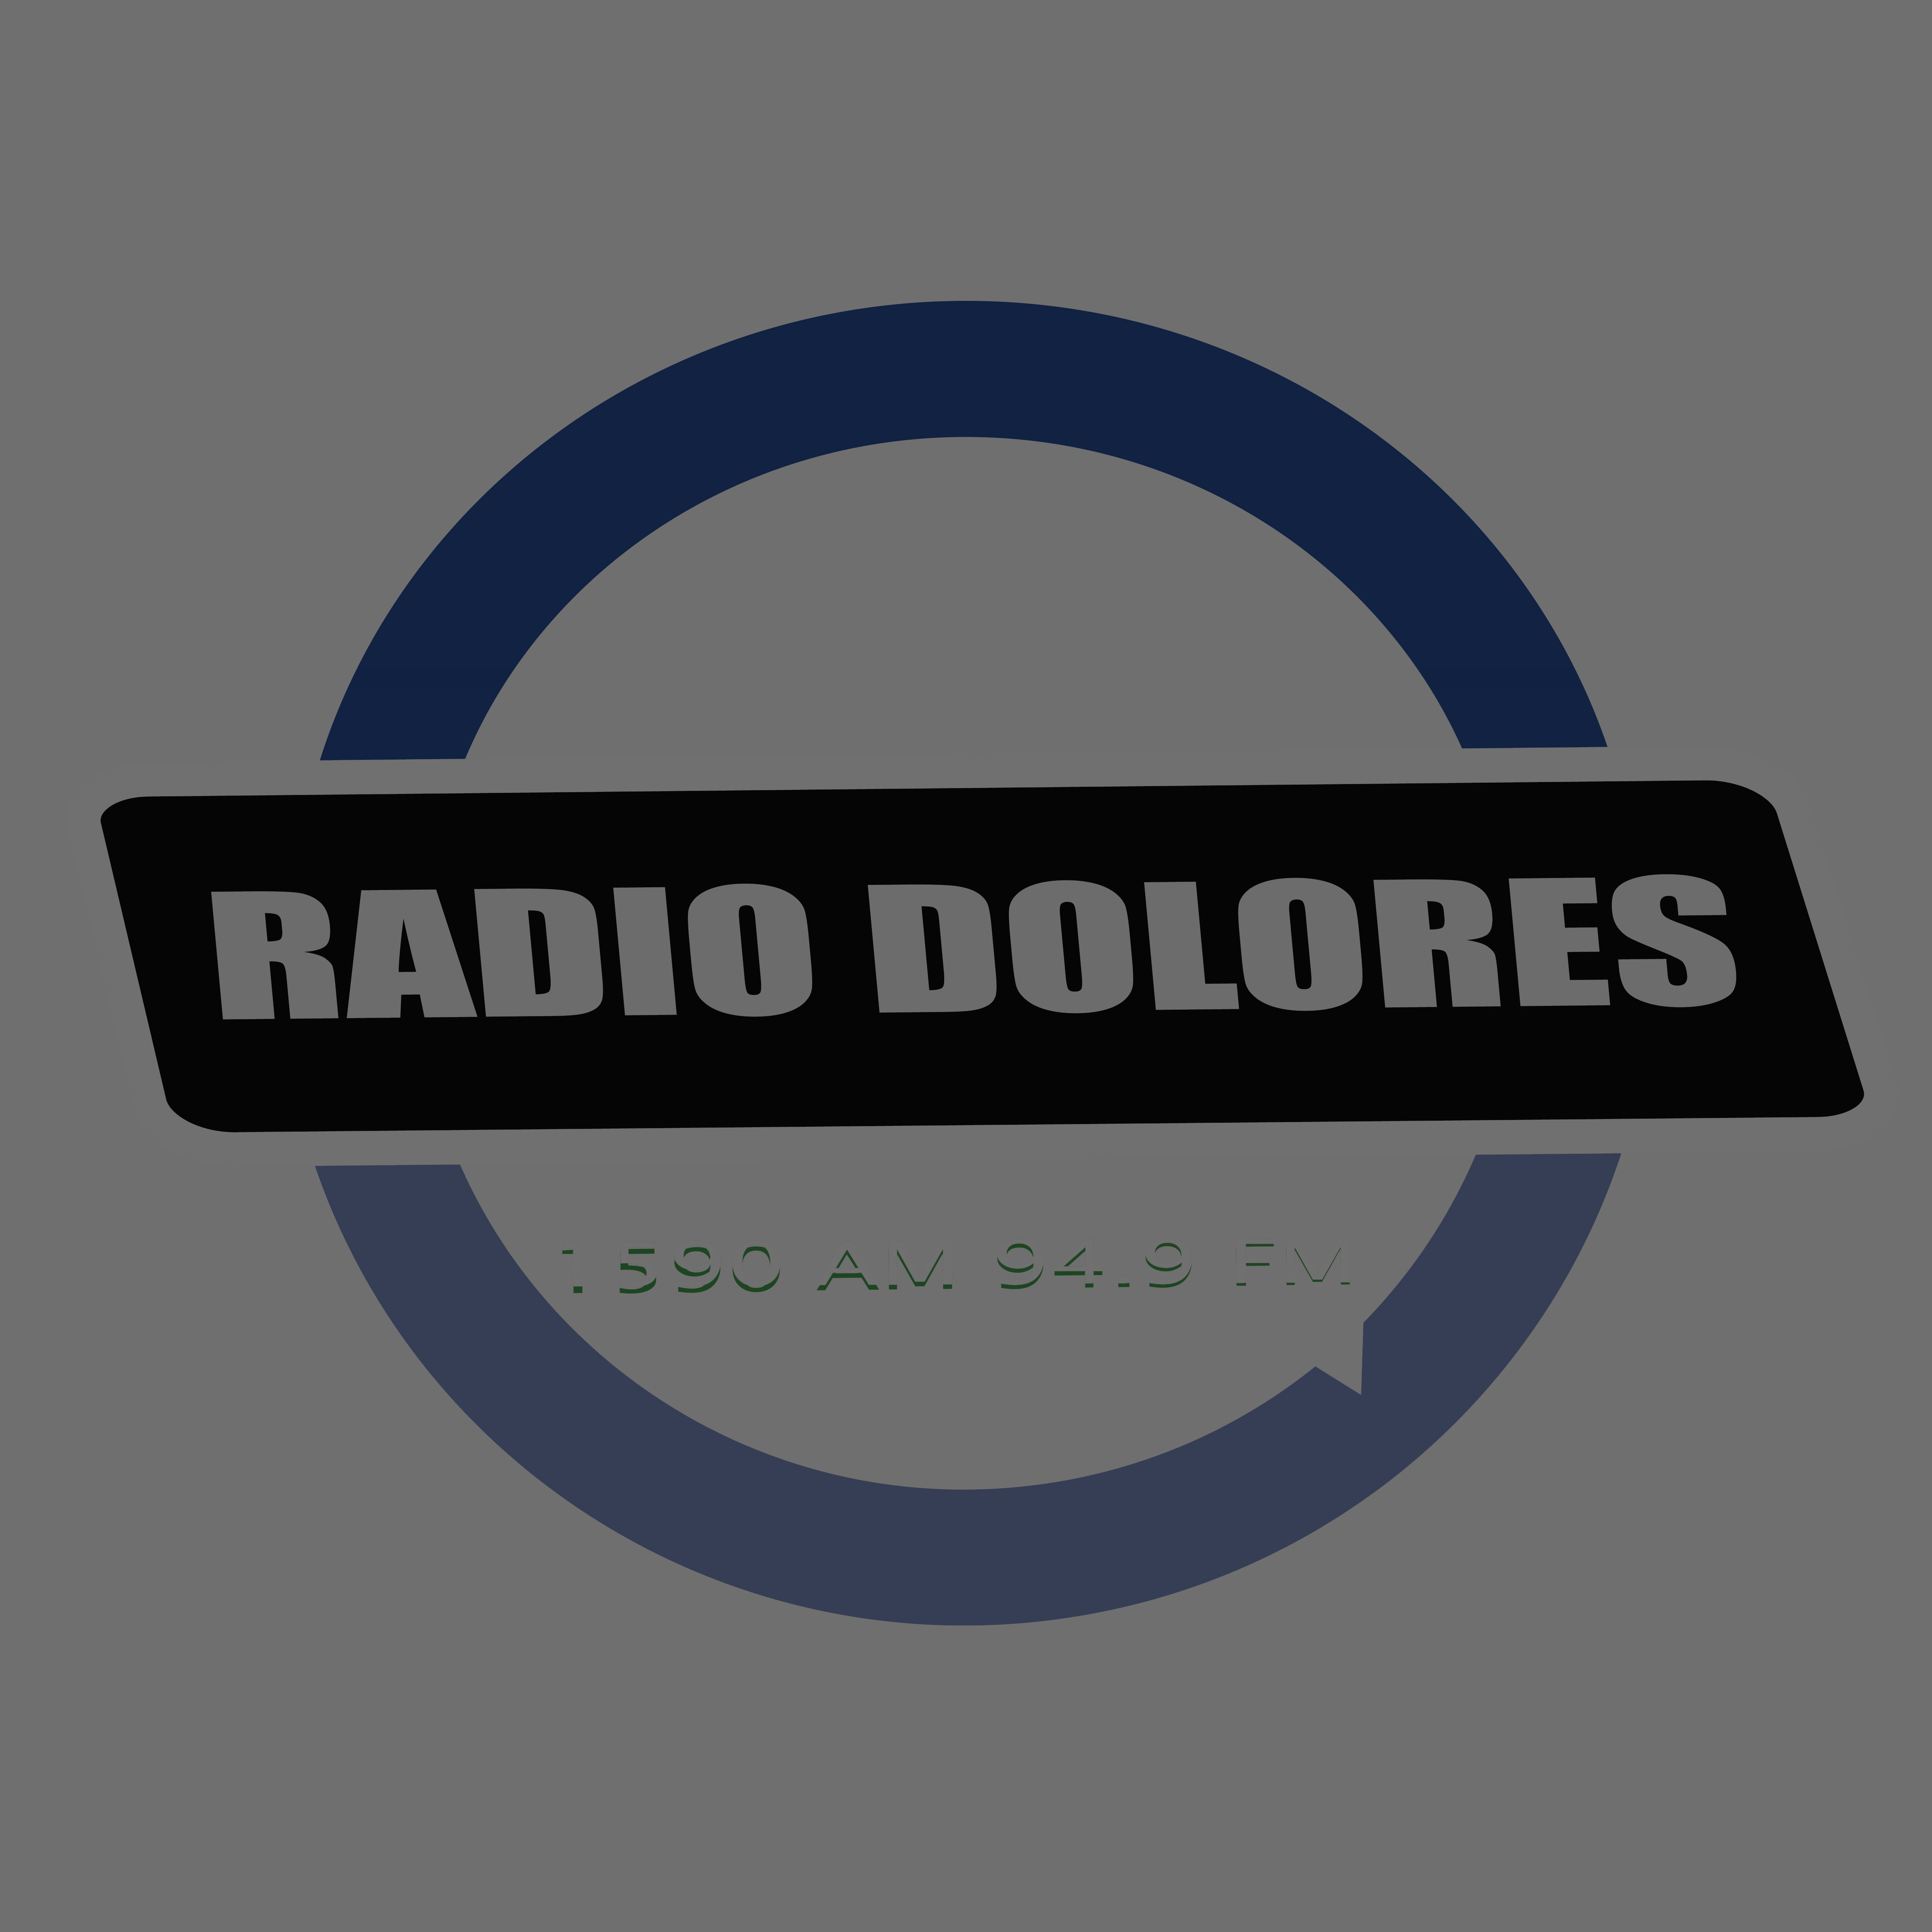 (c) Radiodolores.com.ar